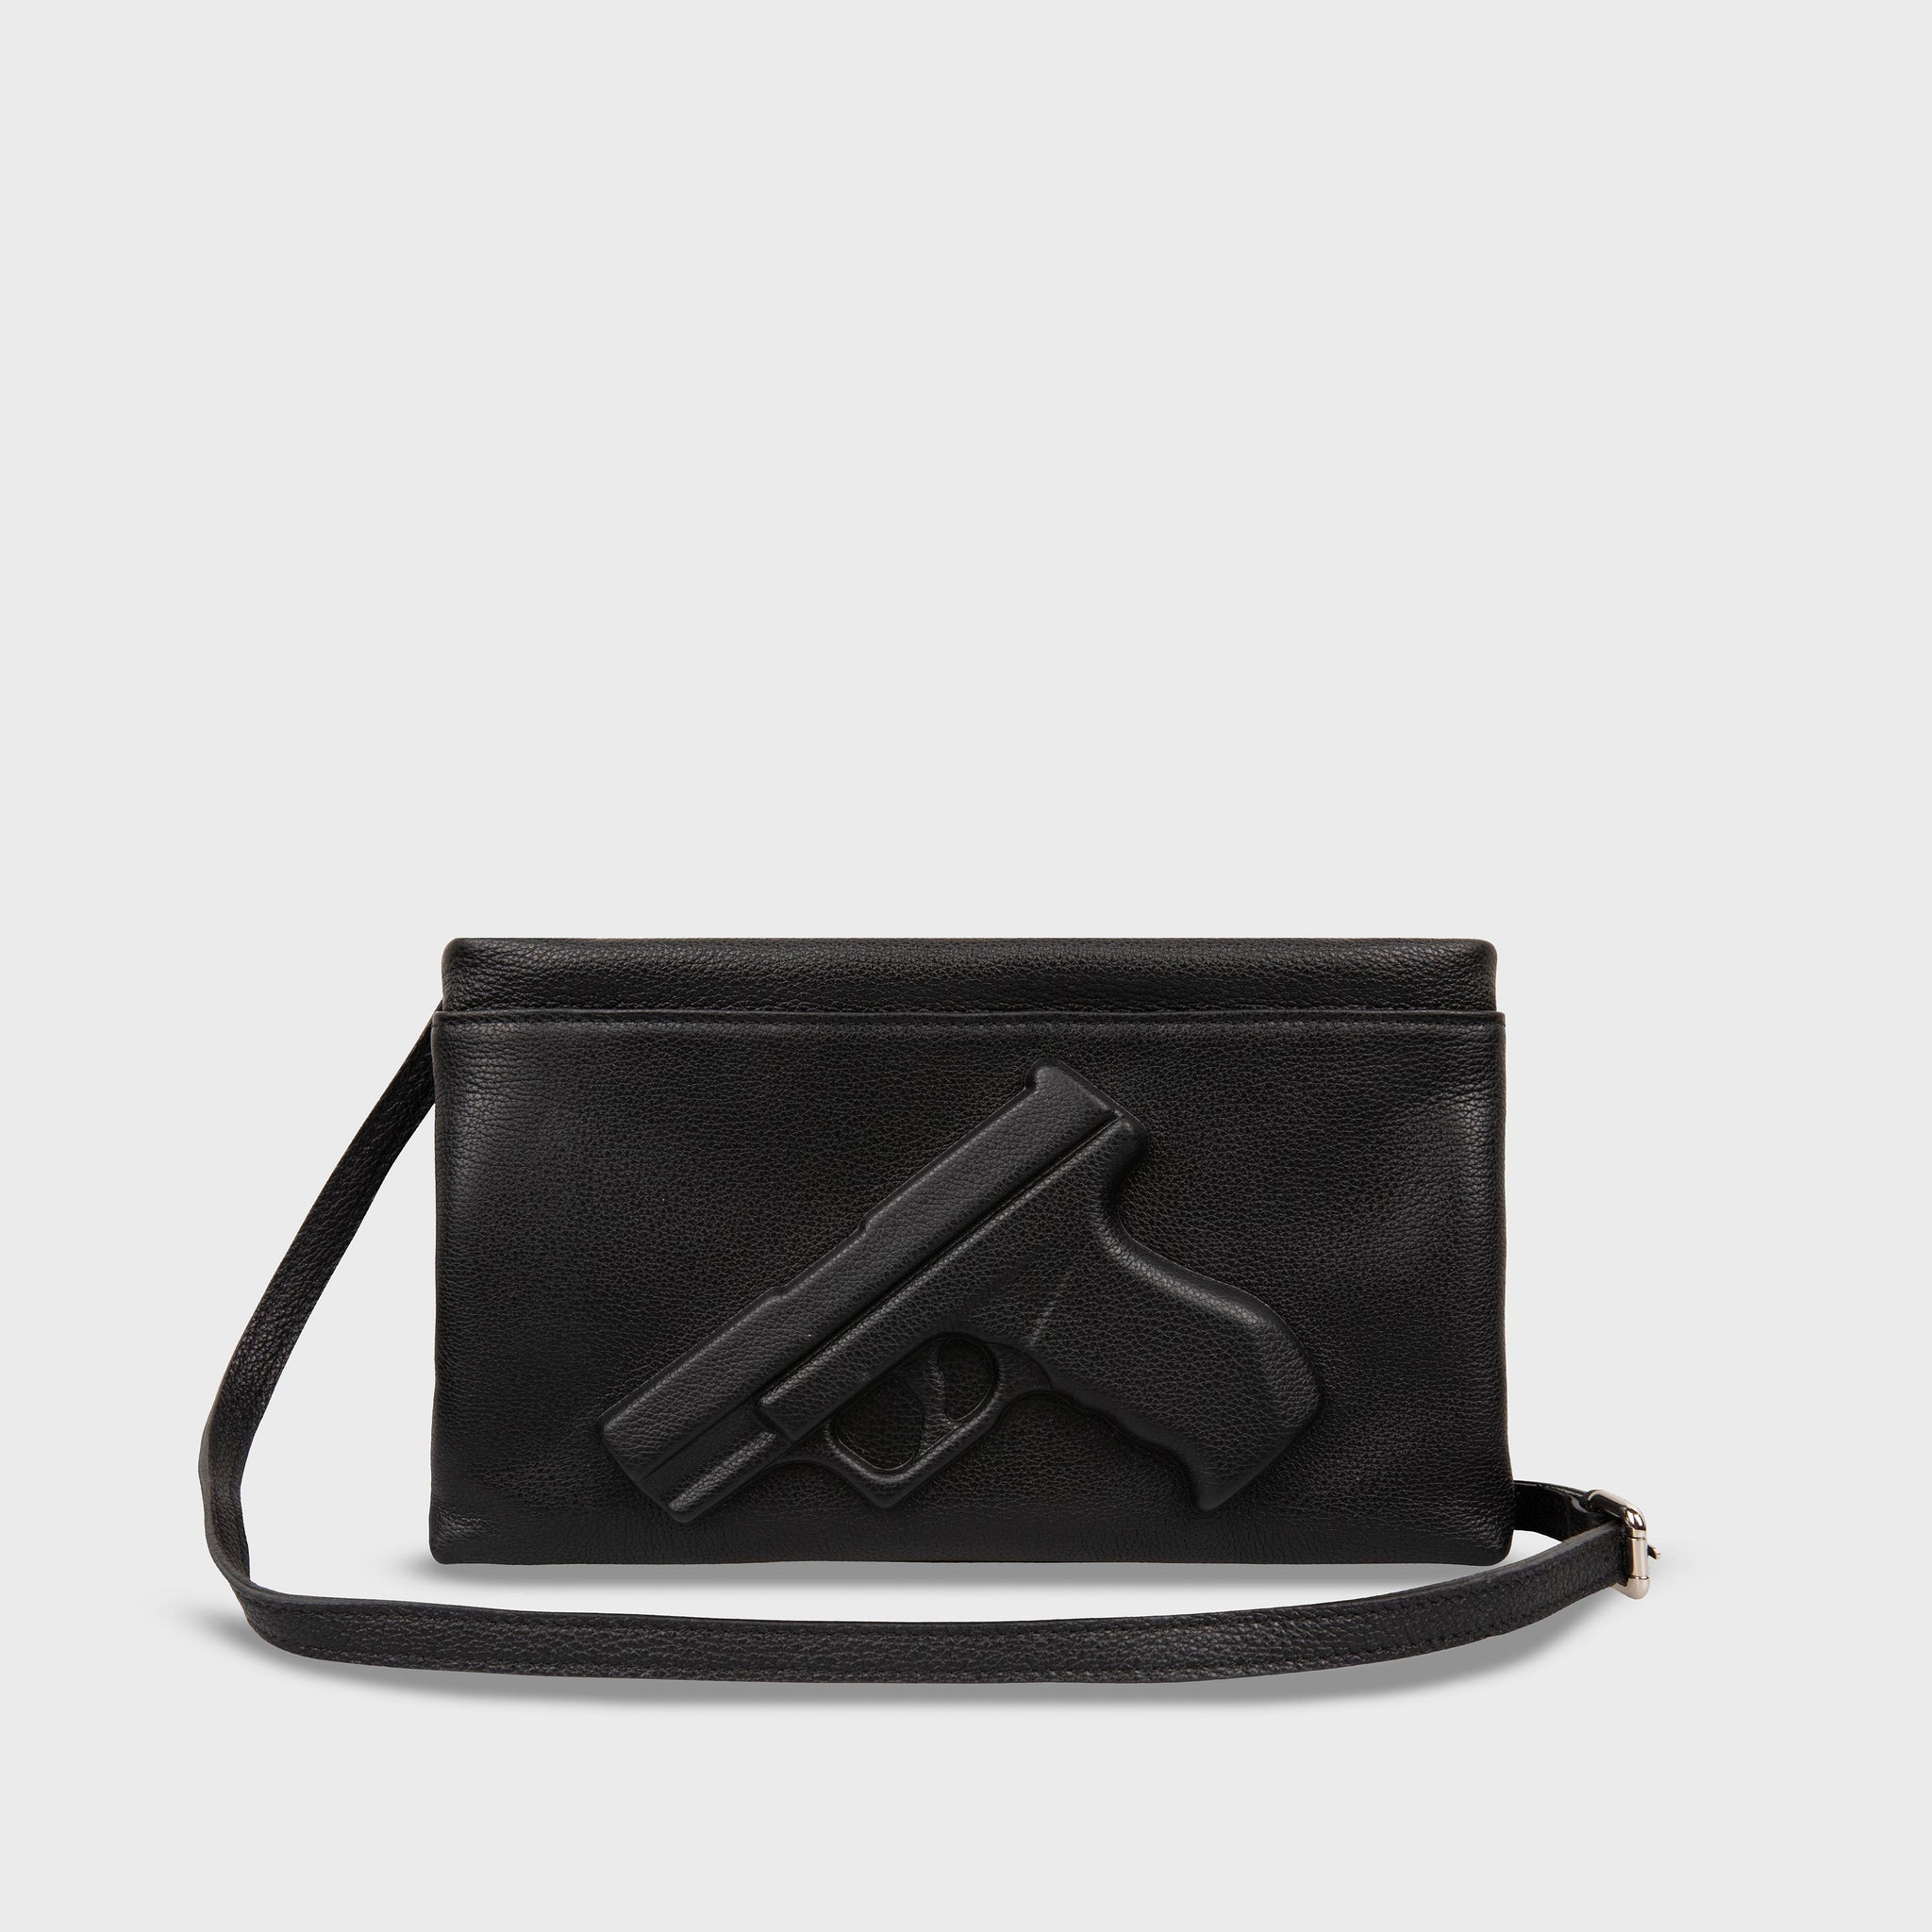 Vlieger & Vandam - Clutch Knife Black, embossed leather knife bag